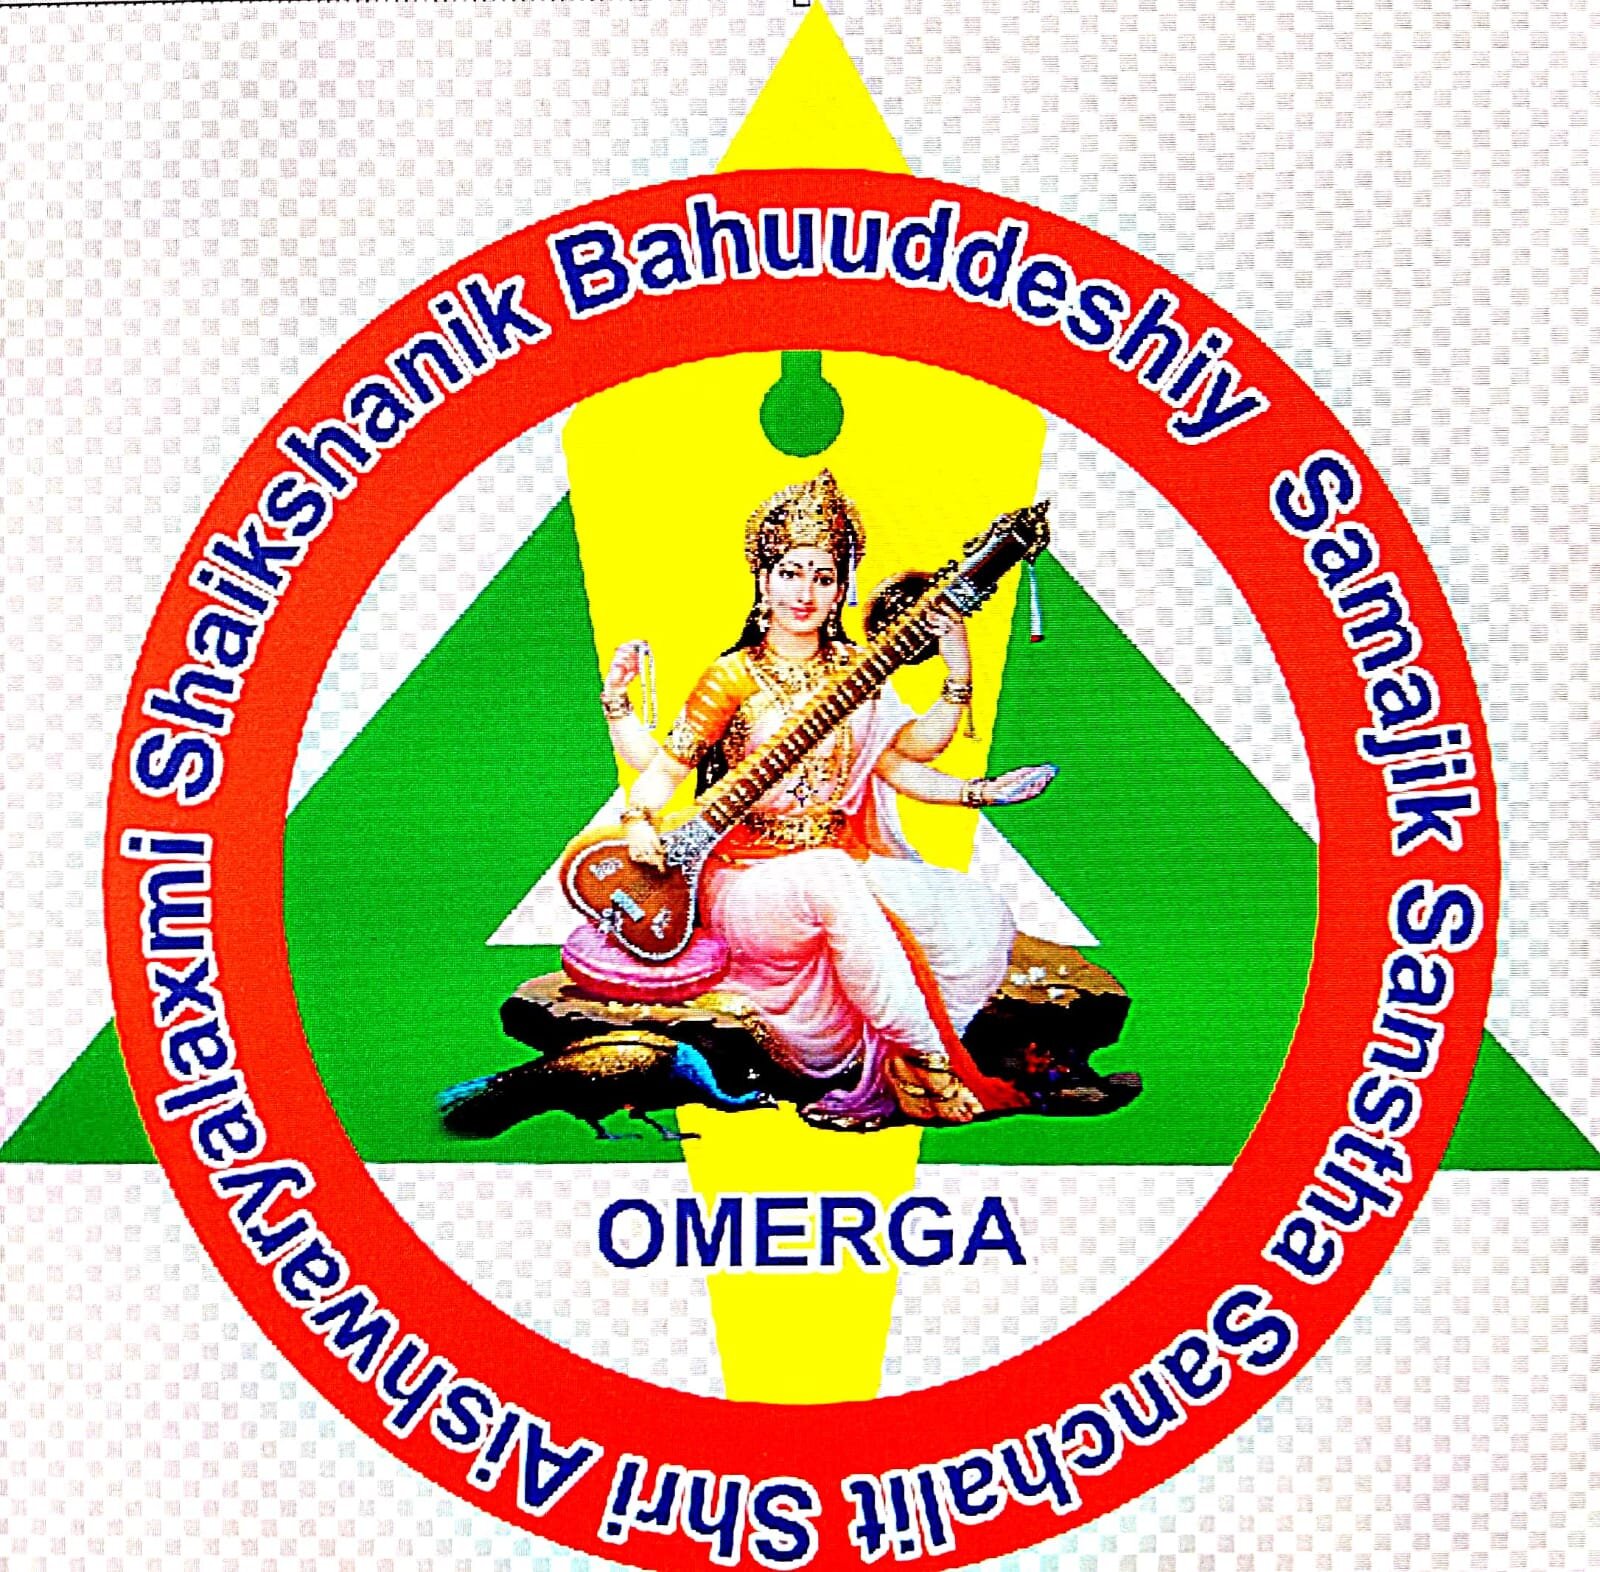 Shri Aishwarya Laxmi Shaikshanik Bahuuddeshiy Samajik Sanstha logo